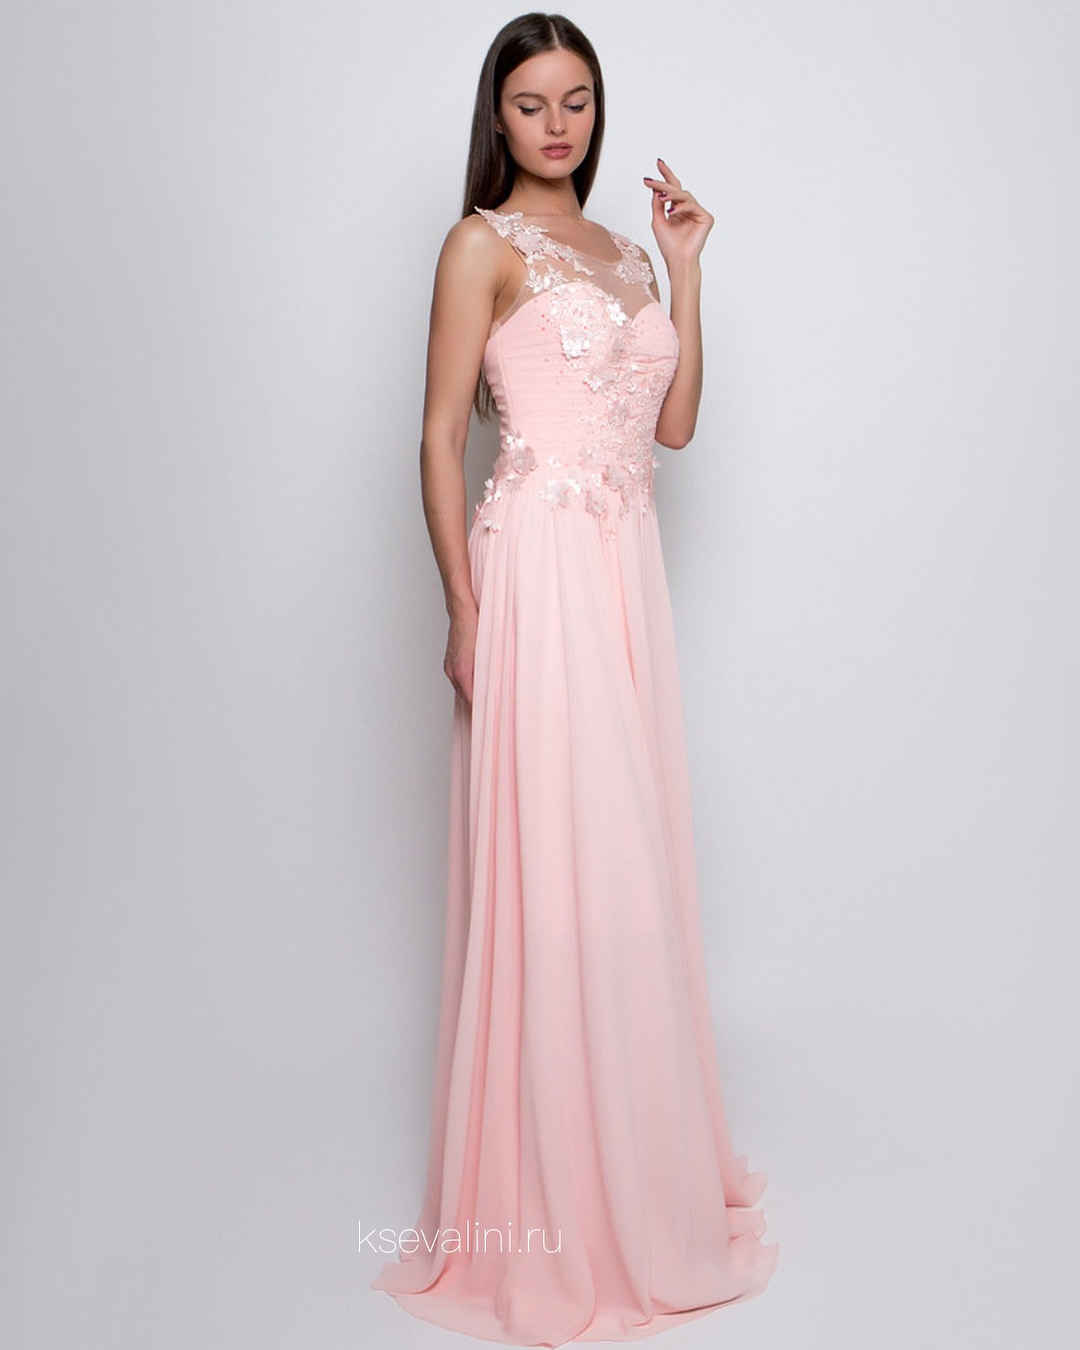 розовое платье на выпускной фото_9